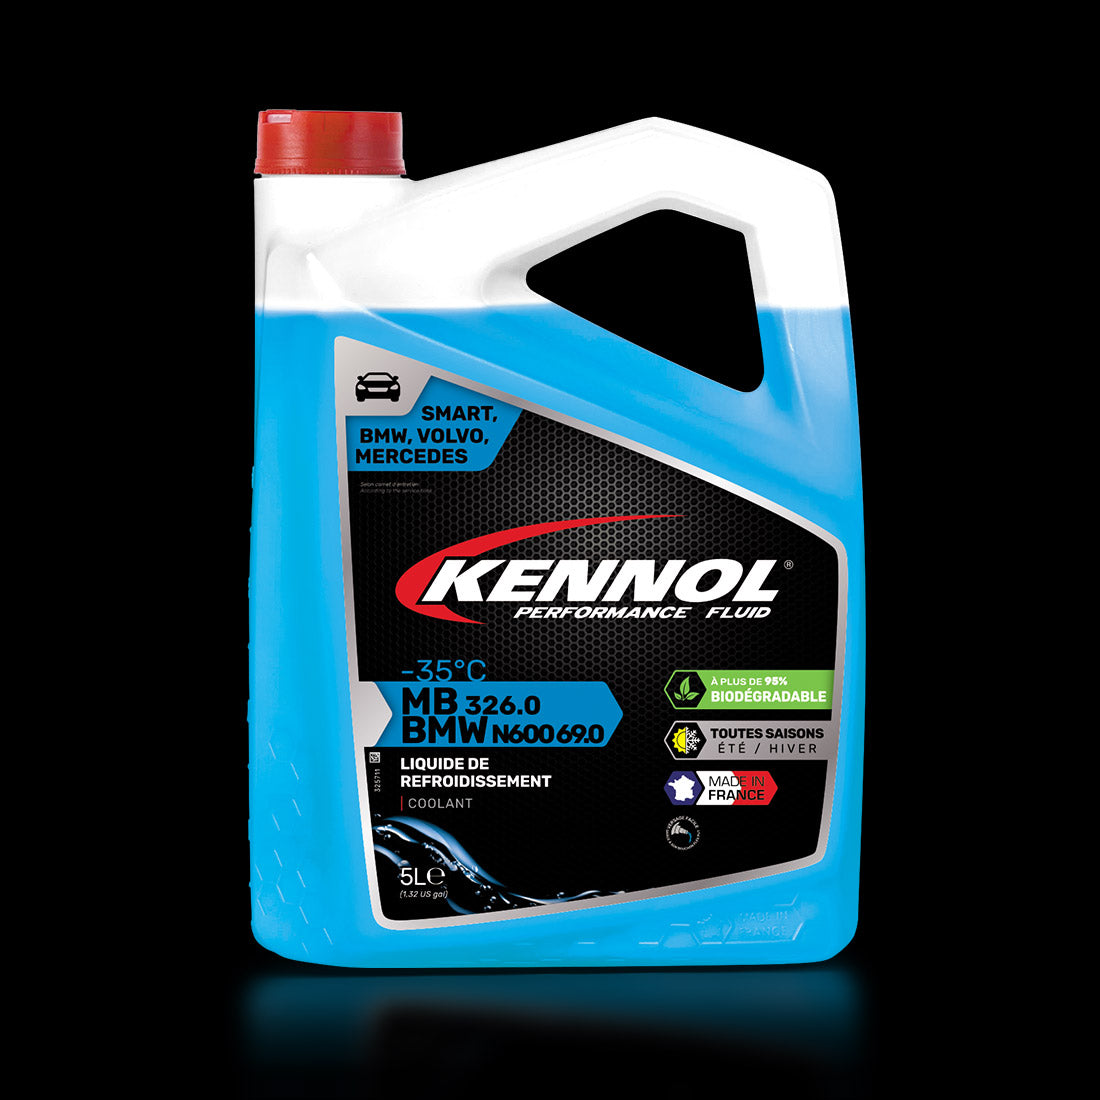 KENNOL - LIQUIDE DE REFROIDISSEMENT MB-BMW -35°C - 5L